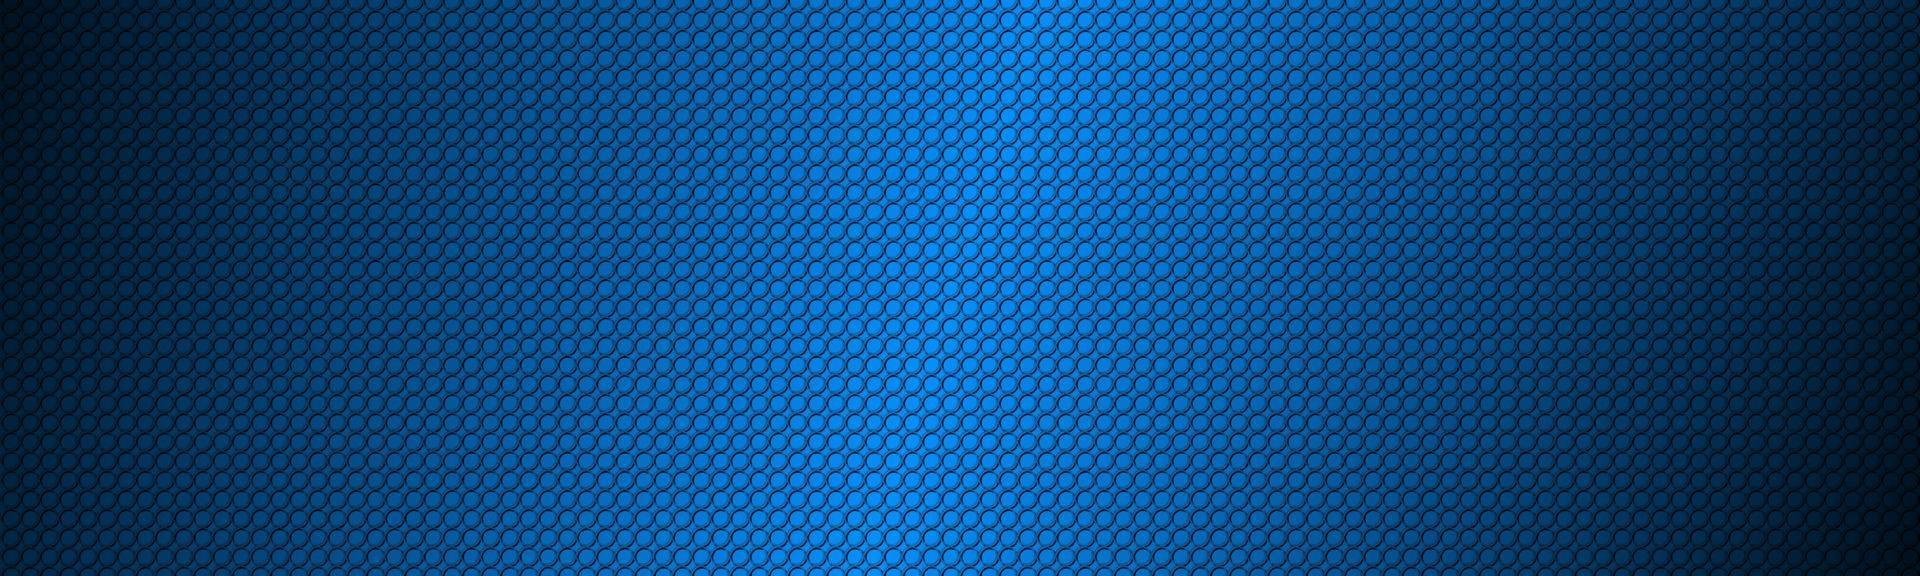 azul abstracto con textura circular encabezado moderno círculo geométrico textura backbground vector patrón de fondo